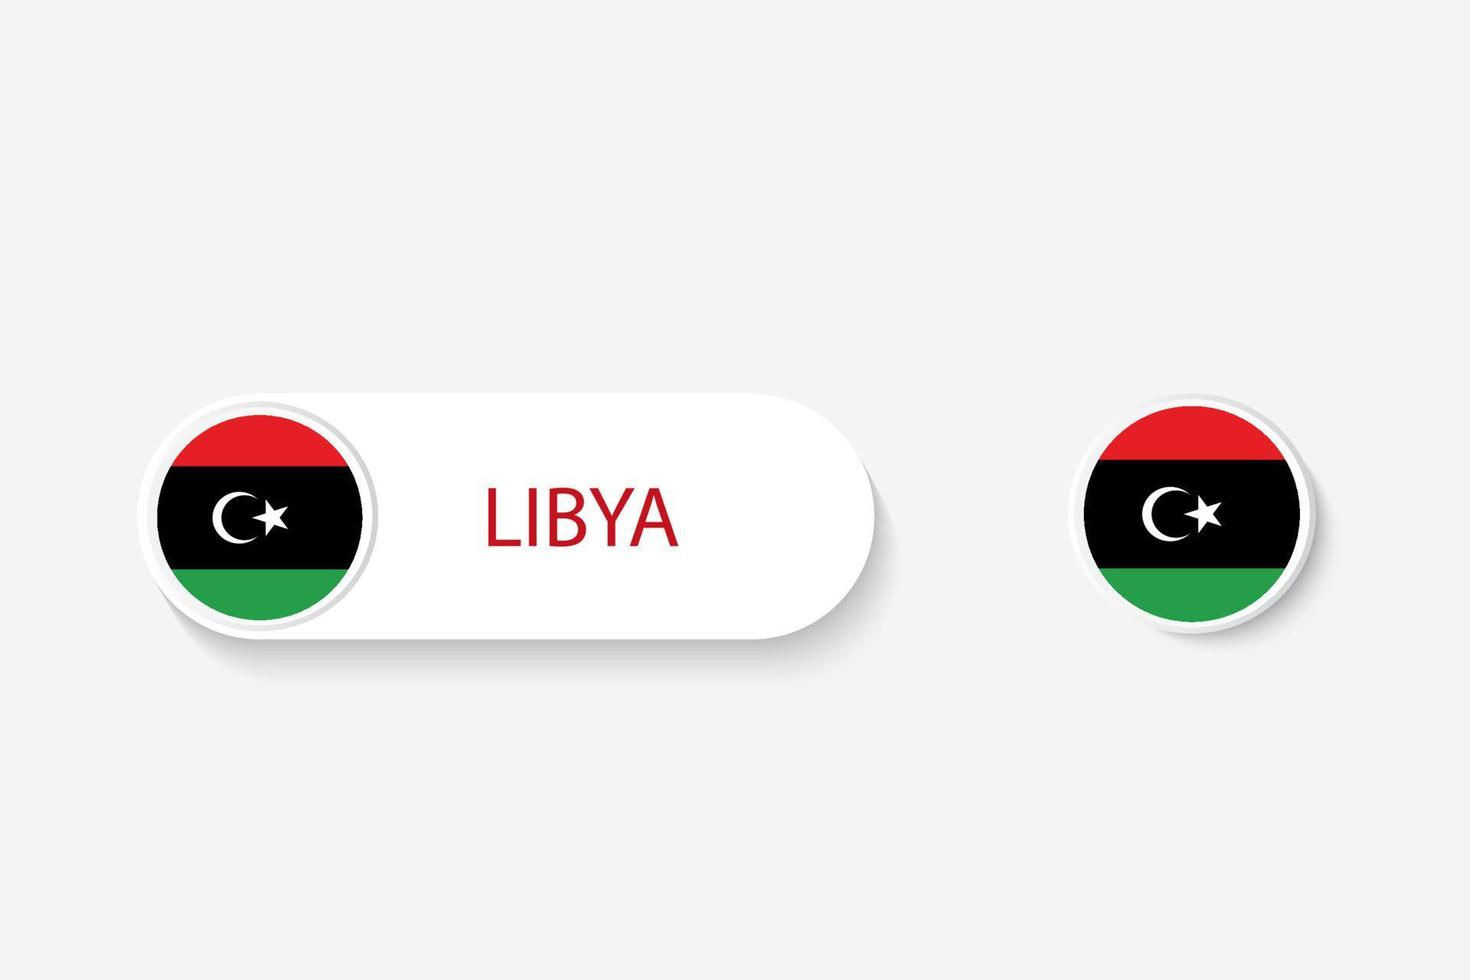 bandera de botón de libia en ilustración de forma ovalada con palabra de libia. y botón bandera libia. vector